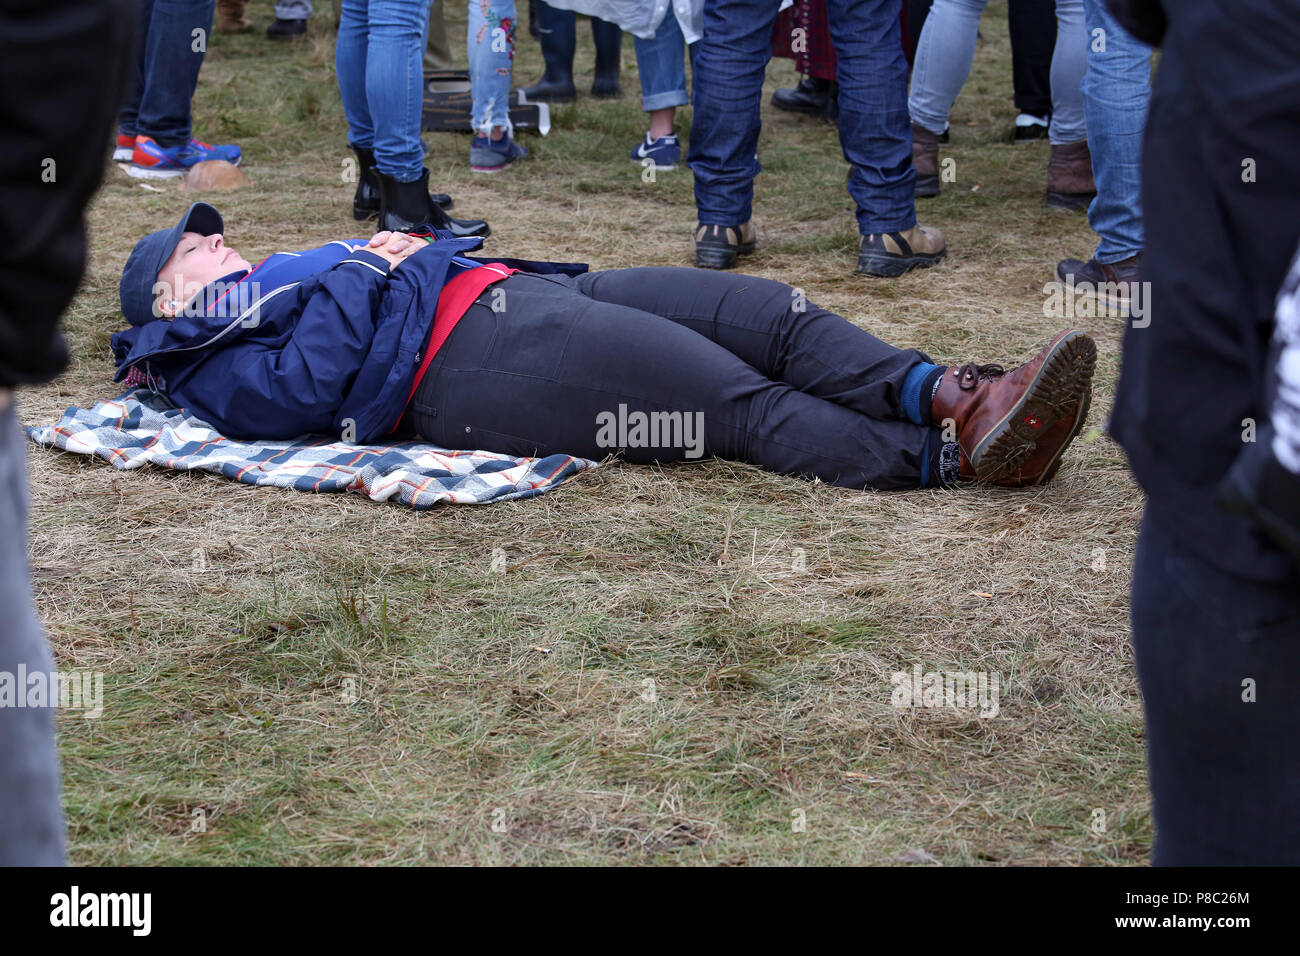 Berlin, Allemagne, la femme est en train de dormir au milieu d'une foule sur le plancher Banque D'Images